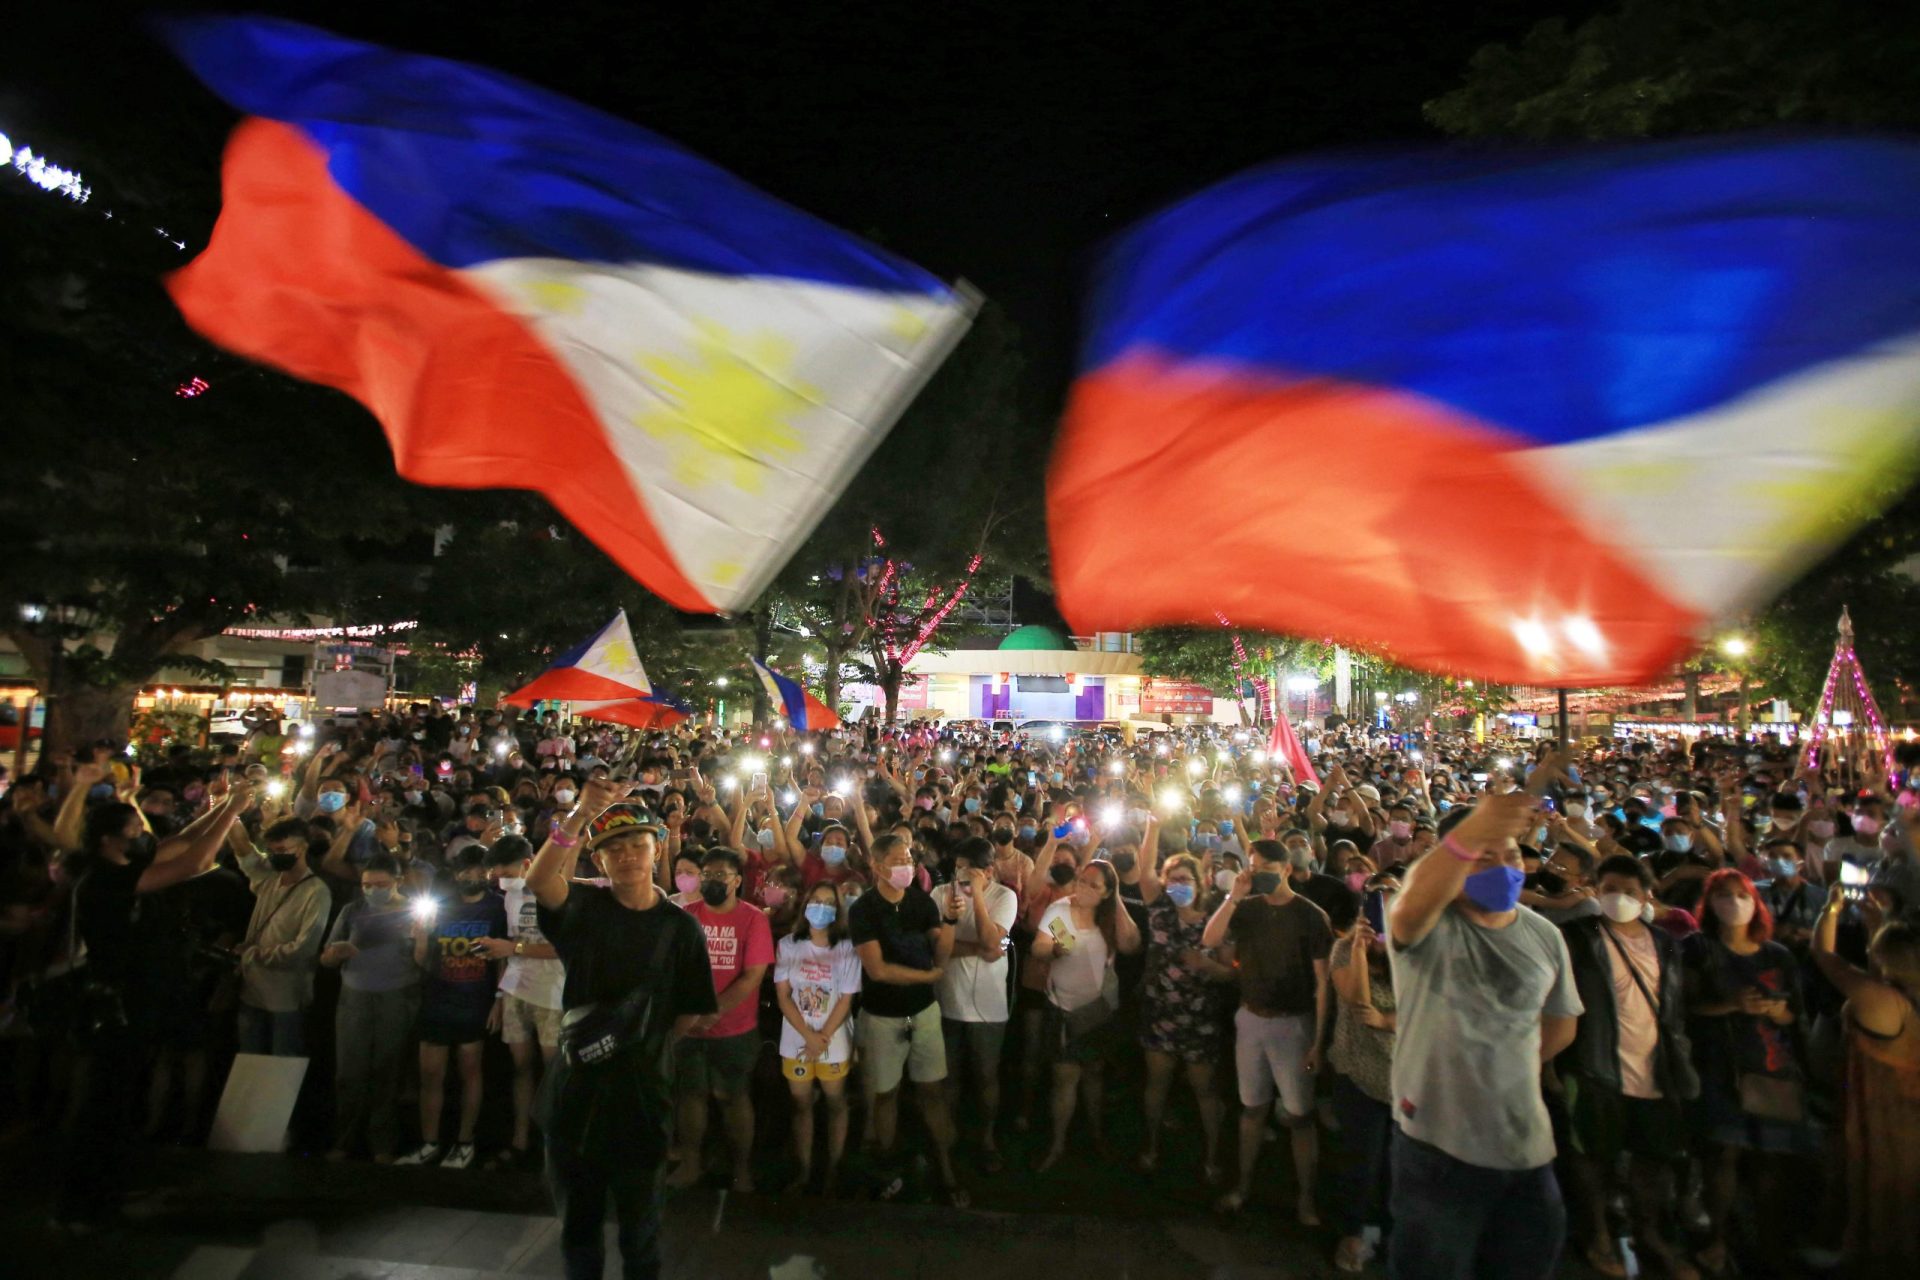 Filipinas. As eleições do “bem contra o mal” favorecem o “mal”